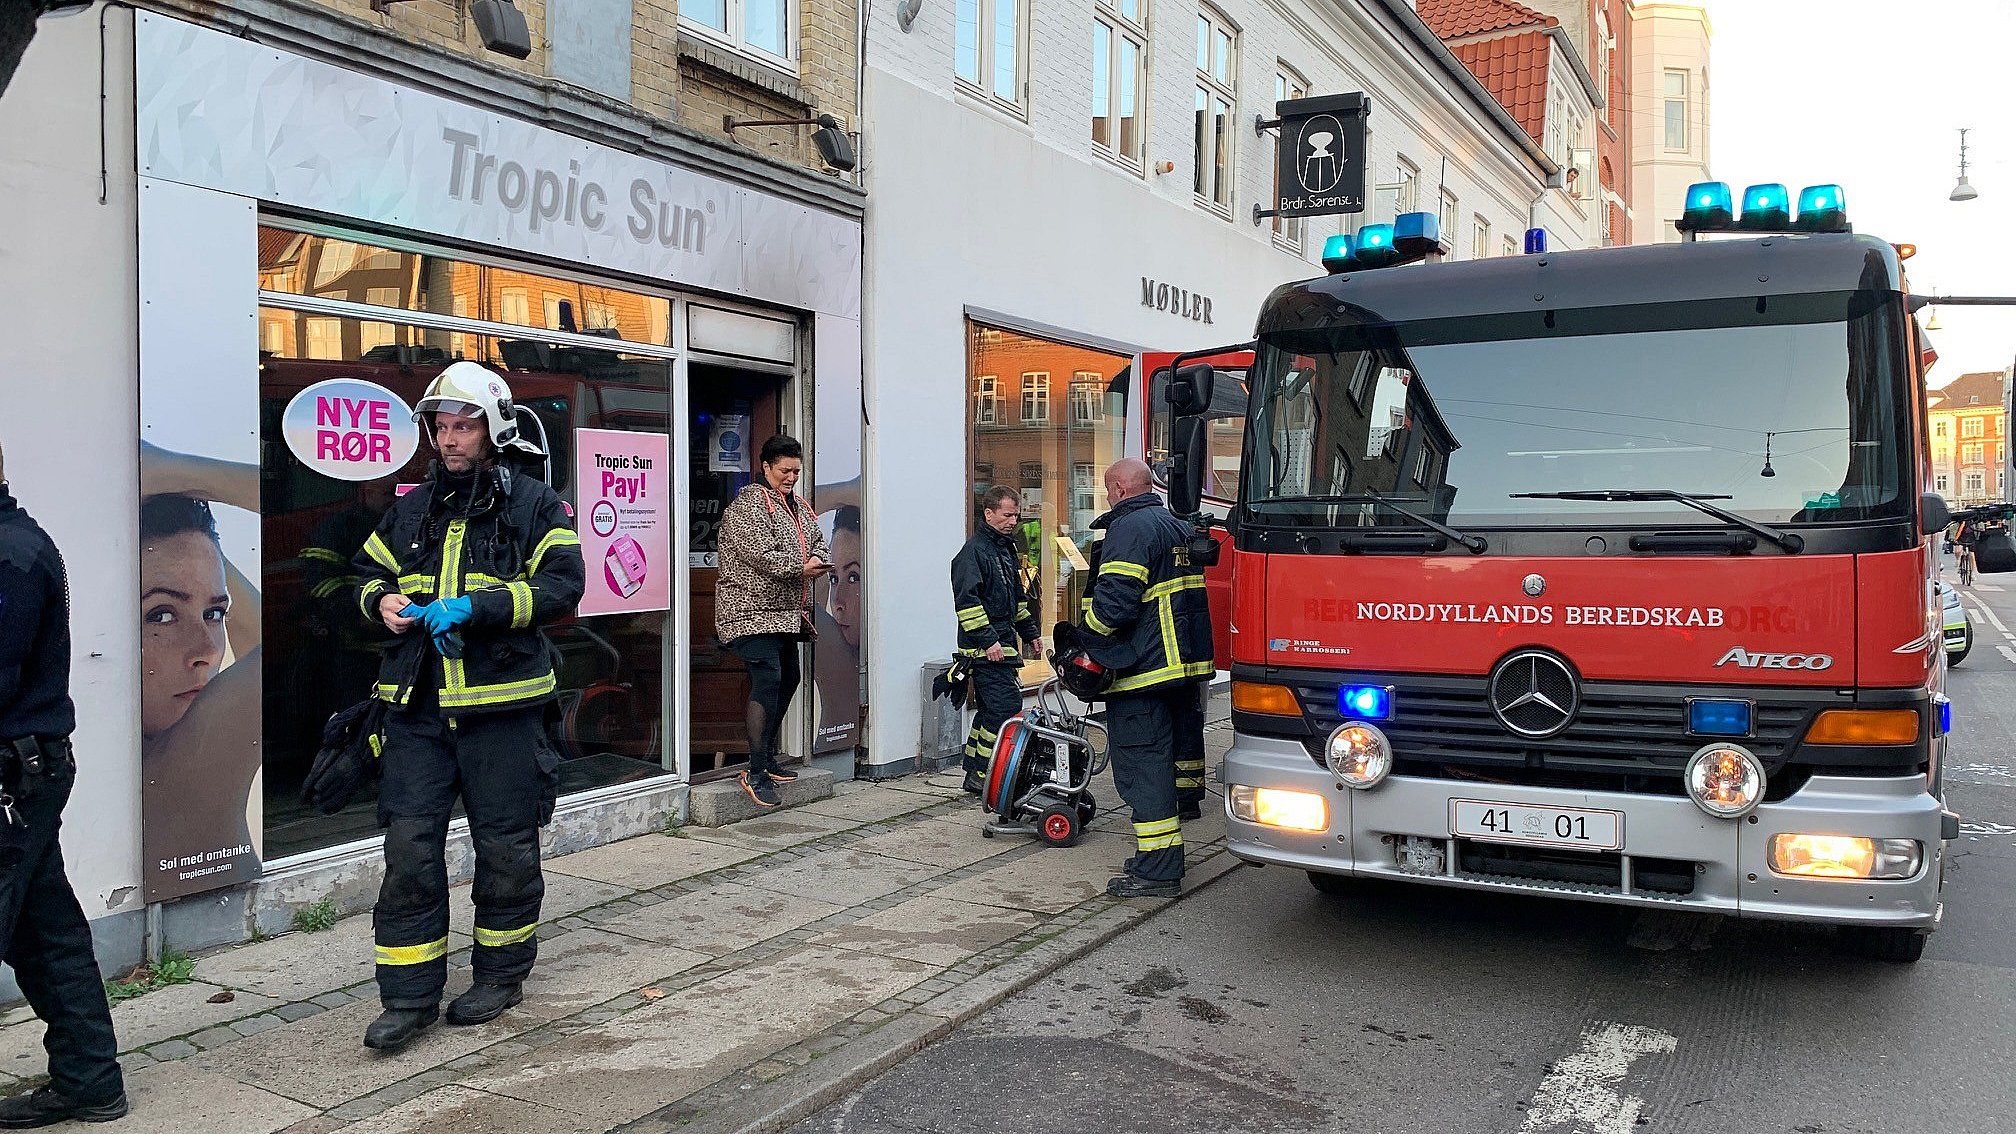 Fjord program Inspiration Syv personer evakueret efter brand i Aalborg | TV2 Nord